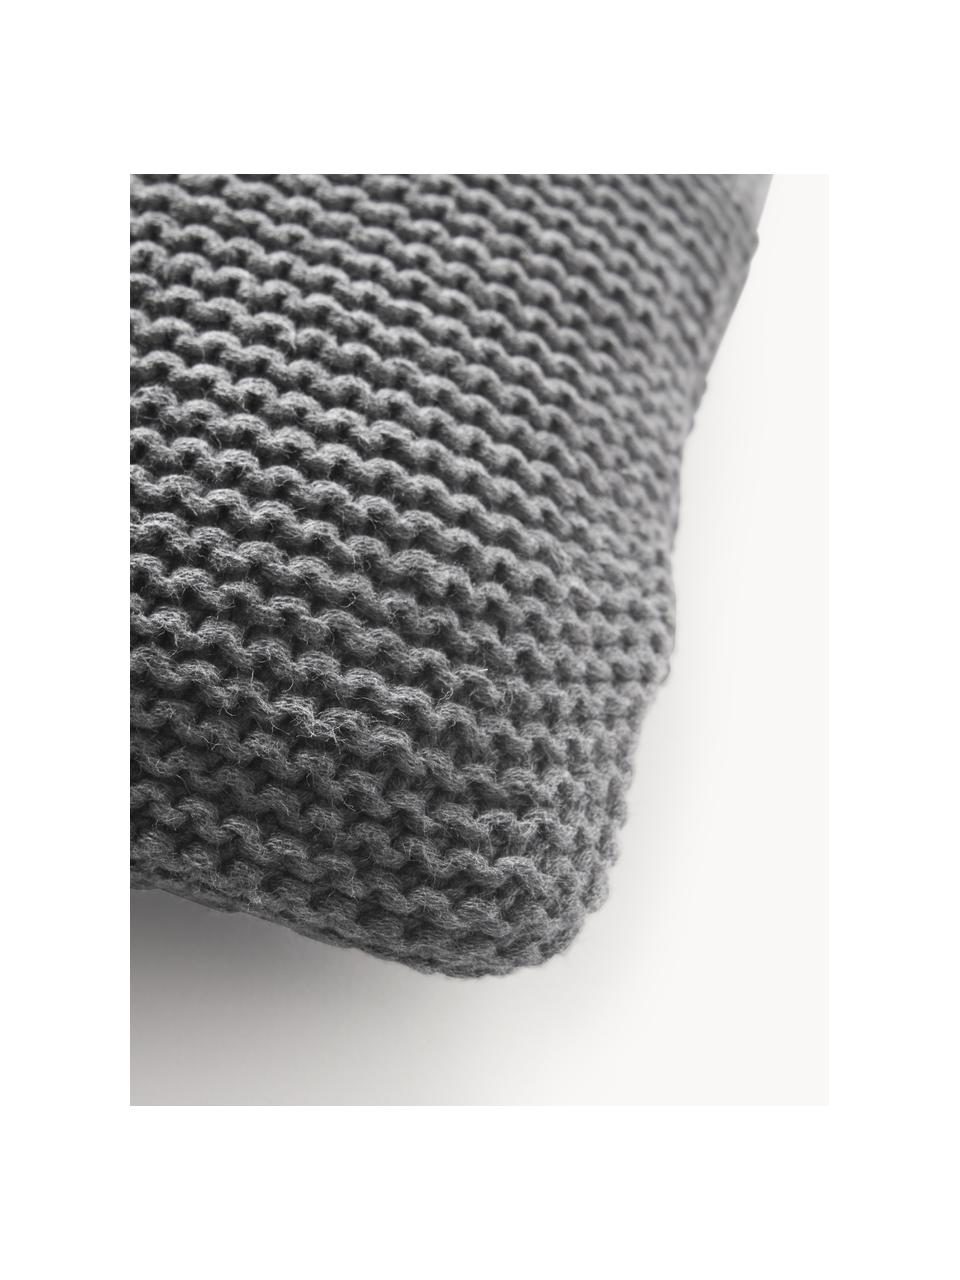 Copricuscino a maglia in cotone organico Adalyn, 100% cotone organico certificato GOTS, Antracite, Larg. 40 x Lung. 40 cm